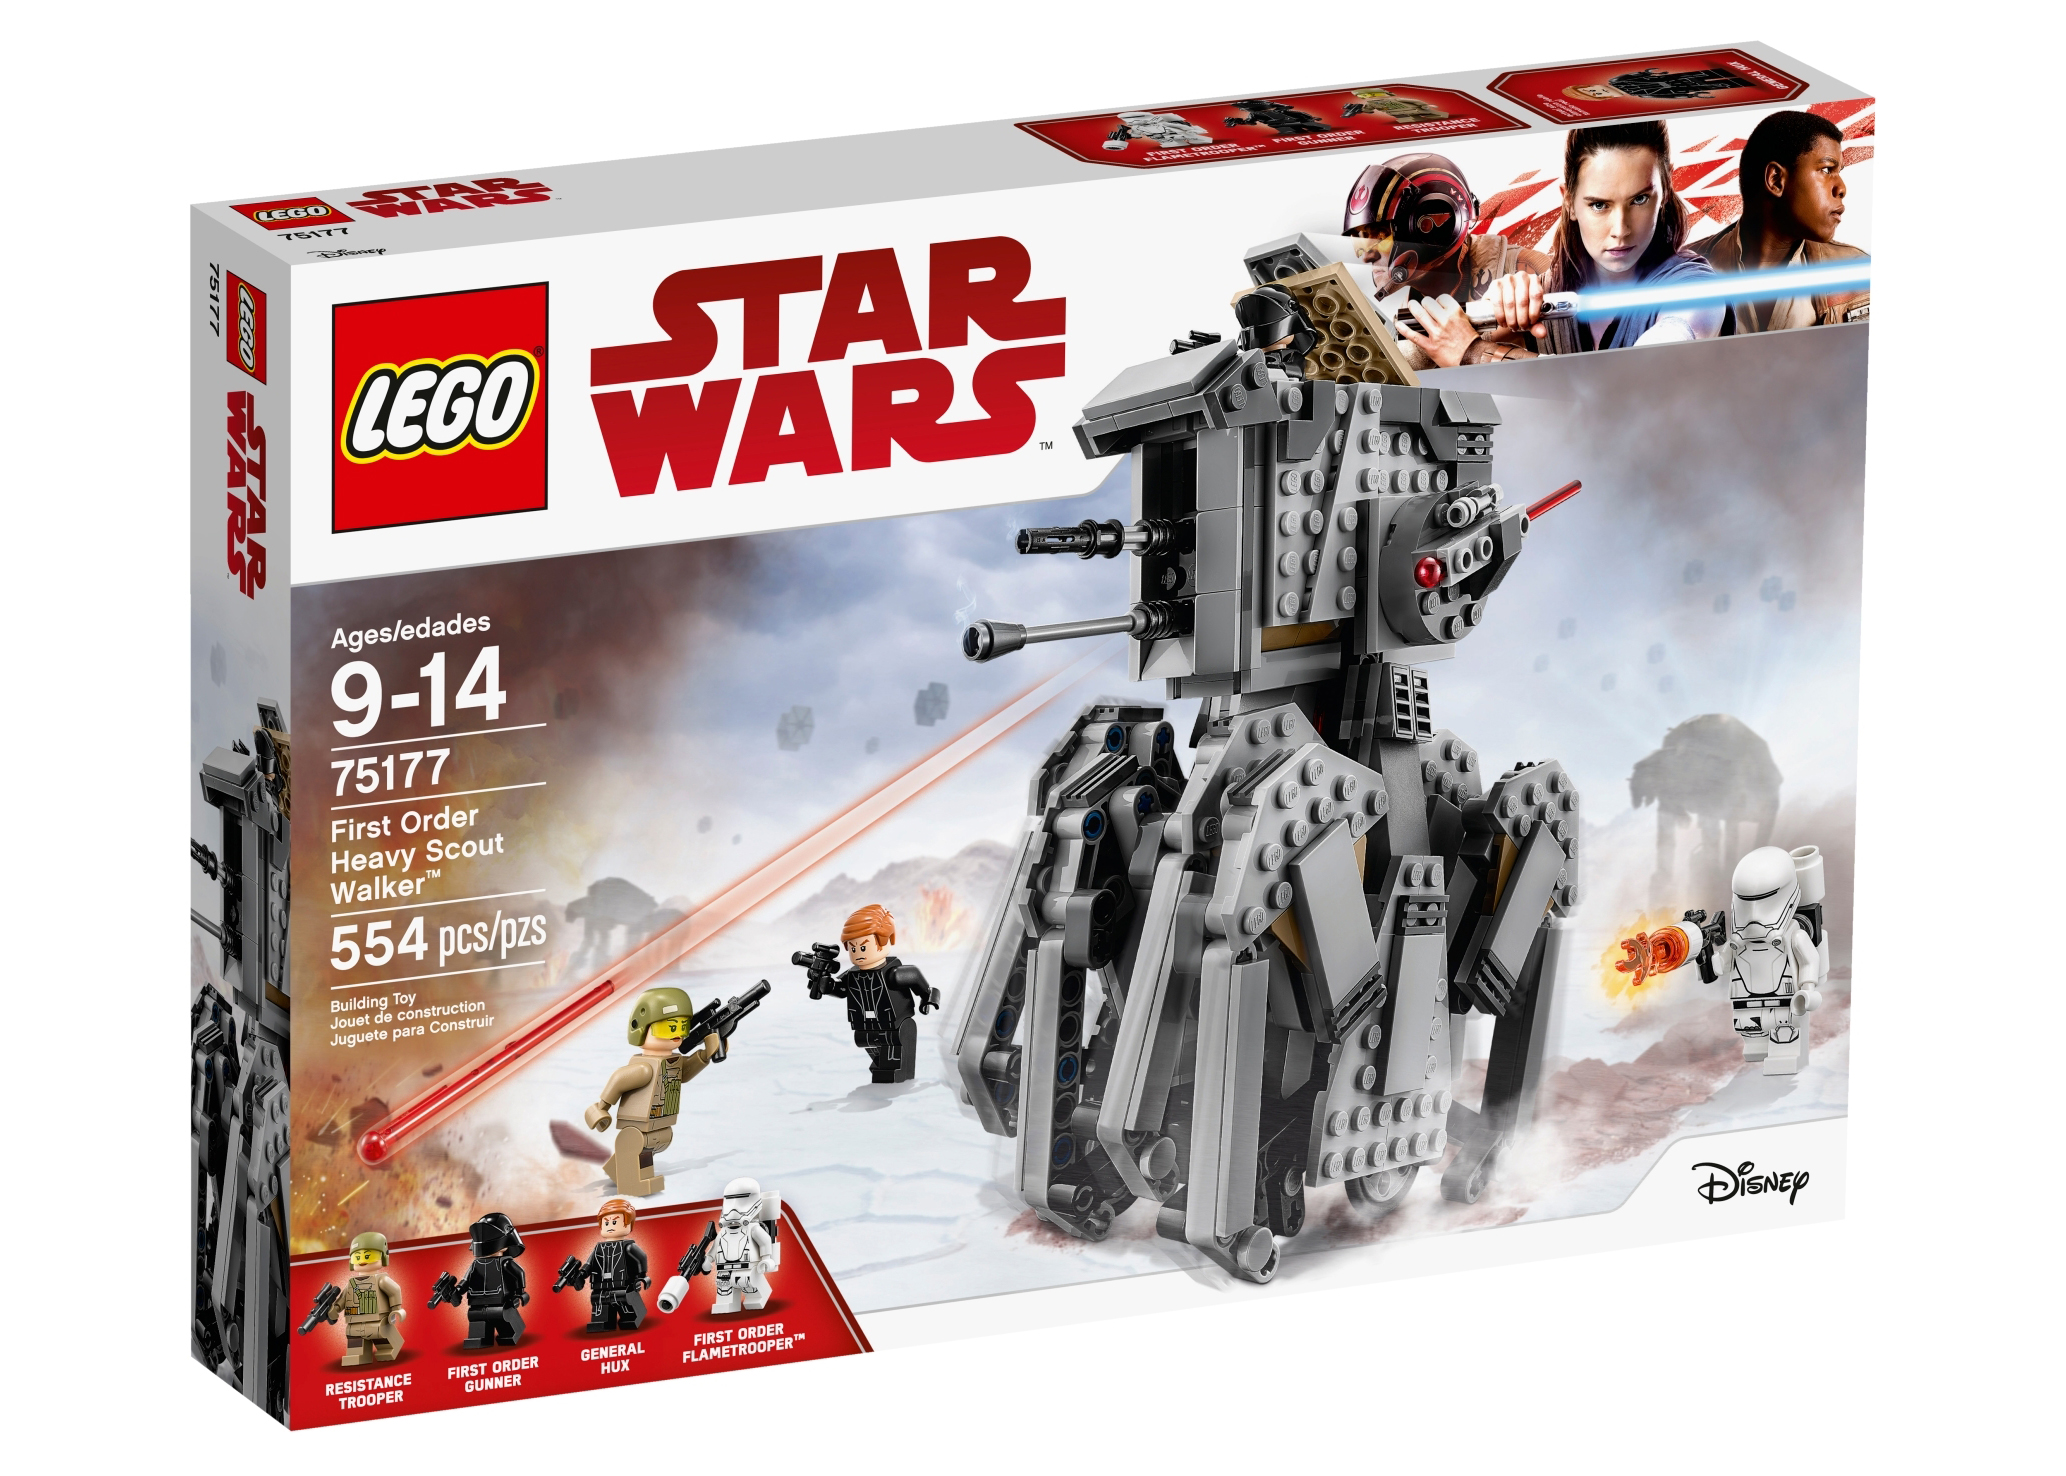 LEGO Star Wars The Force Awakens First Order Snowspeeder Set 75126